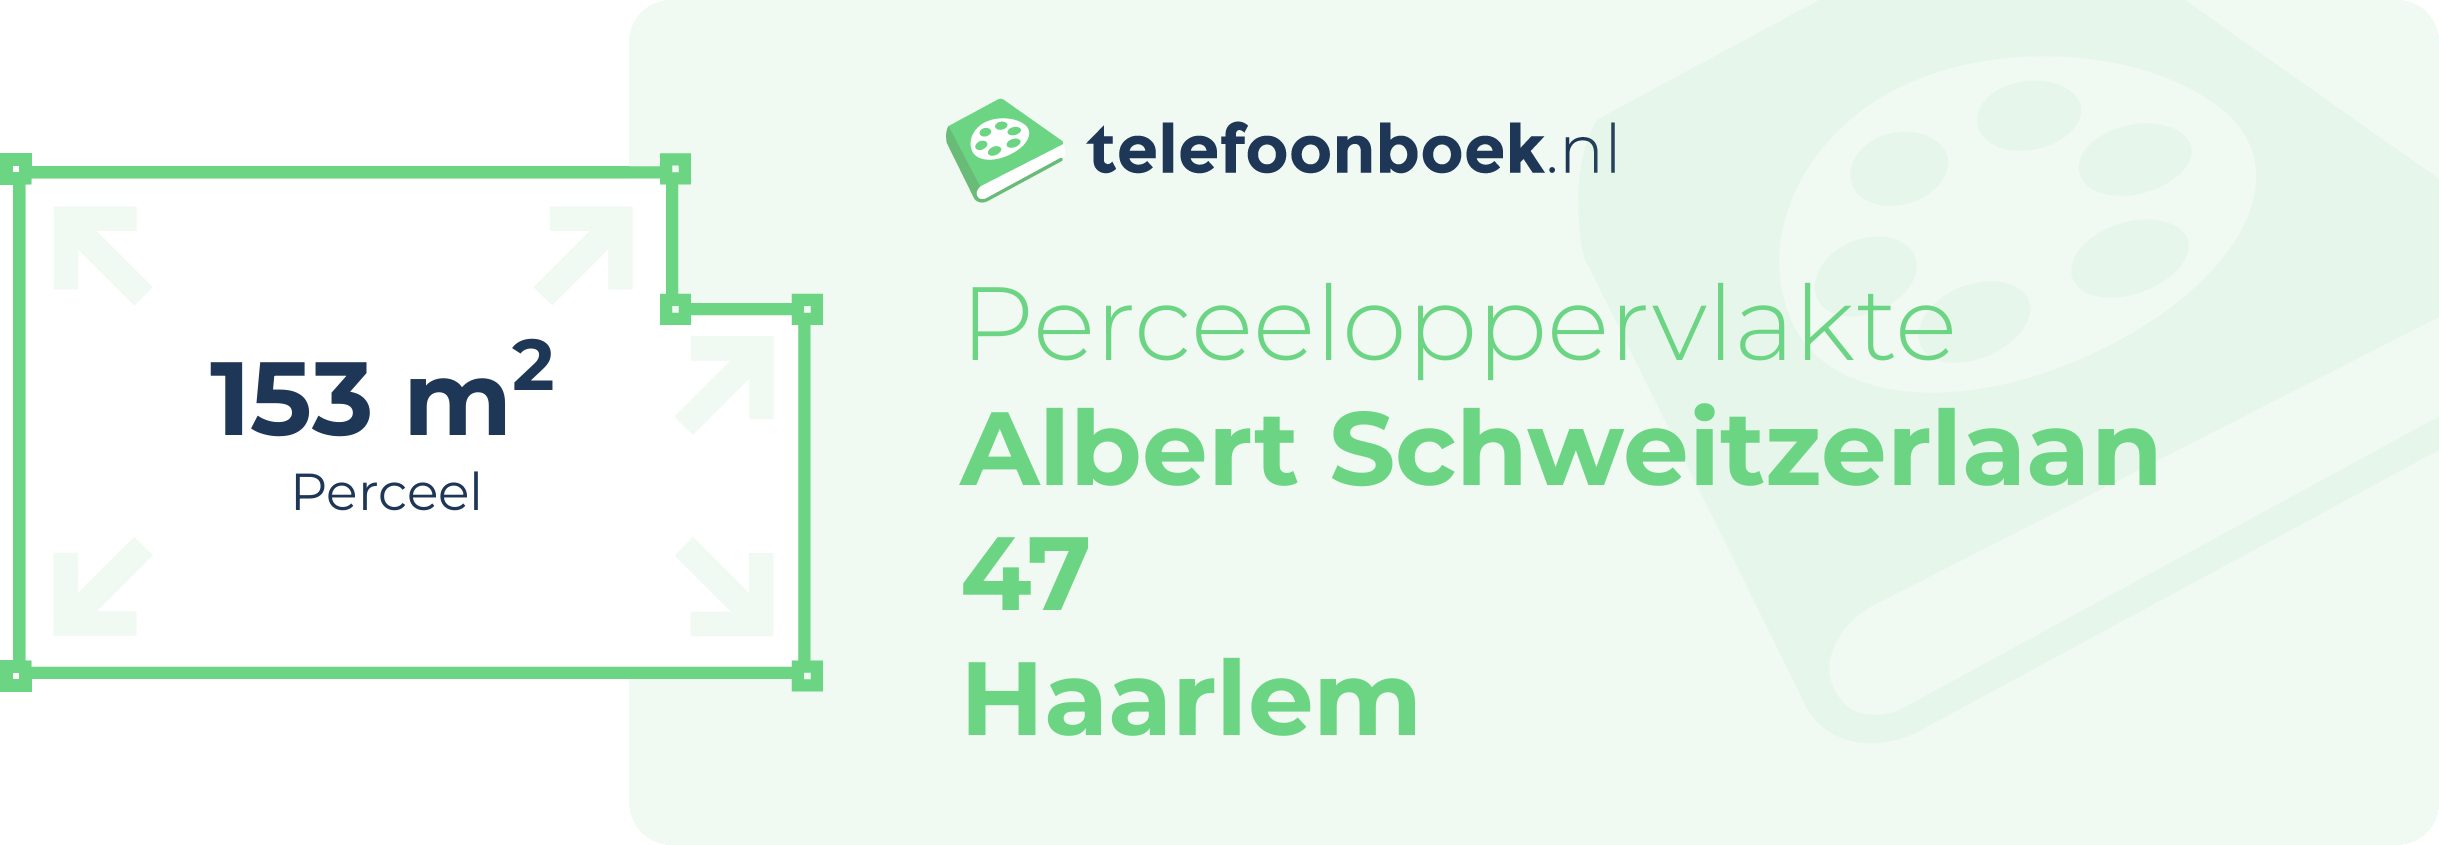 Perceeloppervlakte Albert Schweitzerlaan 47 Haarlem